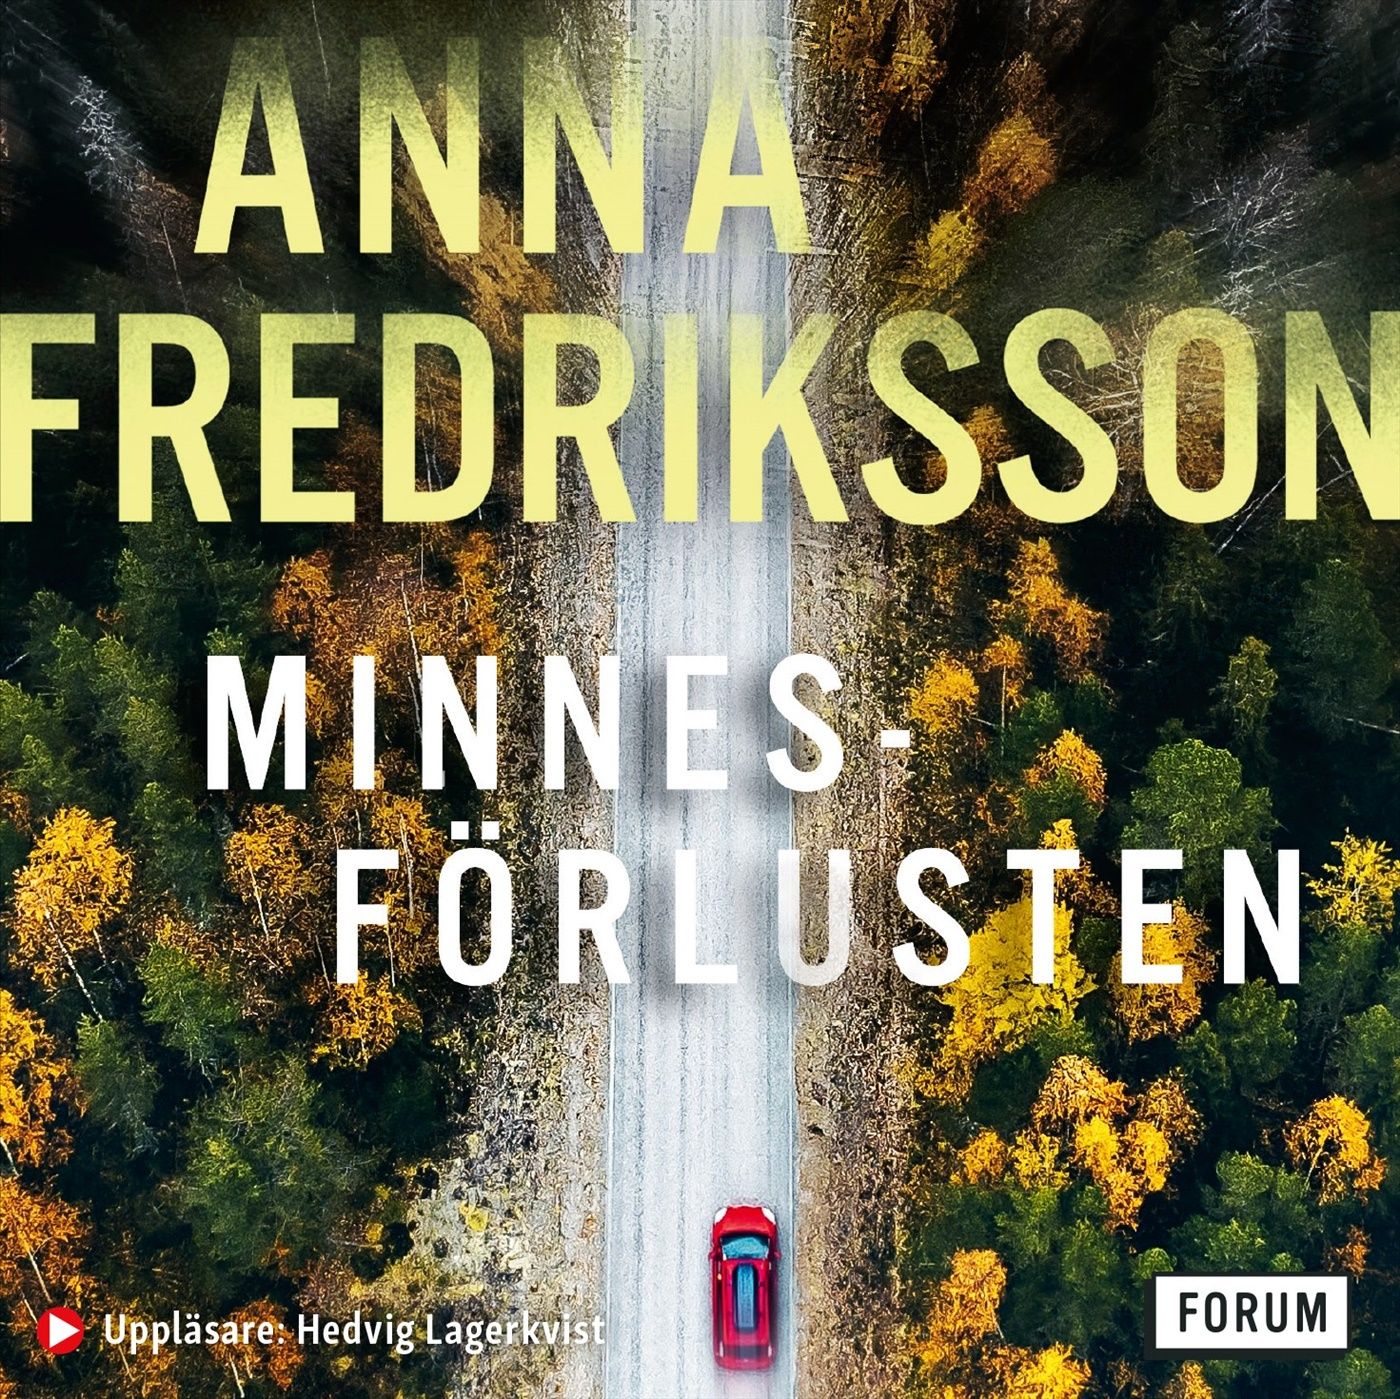 Minnesförlusten, ljudbok av Anna Fredriksson